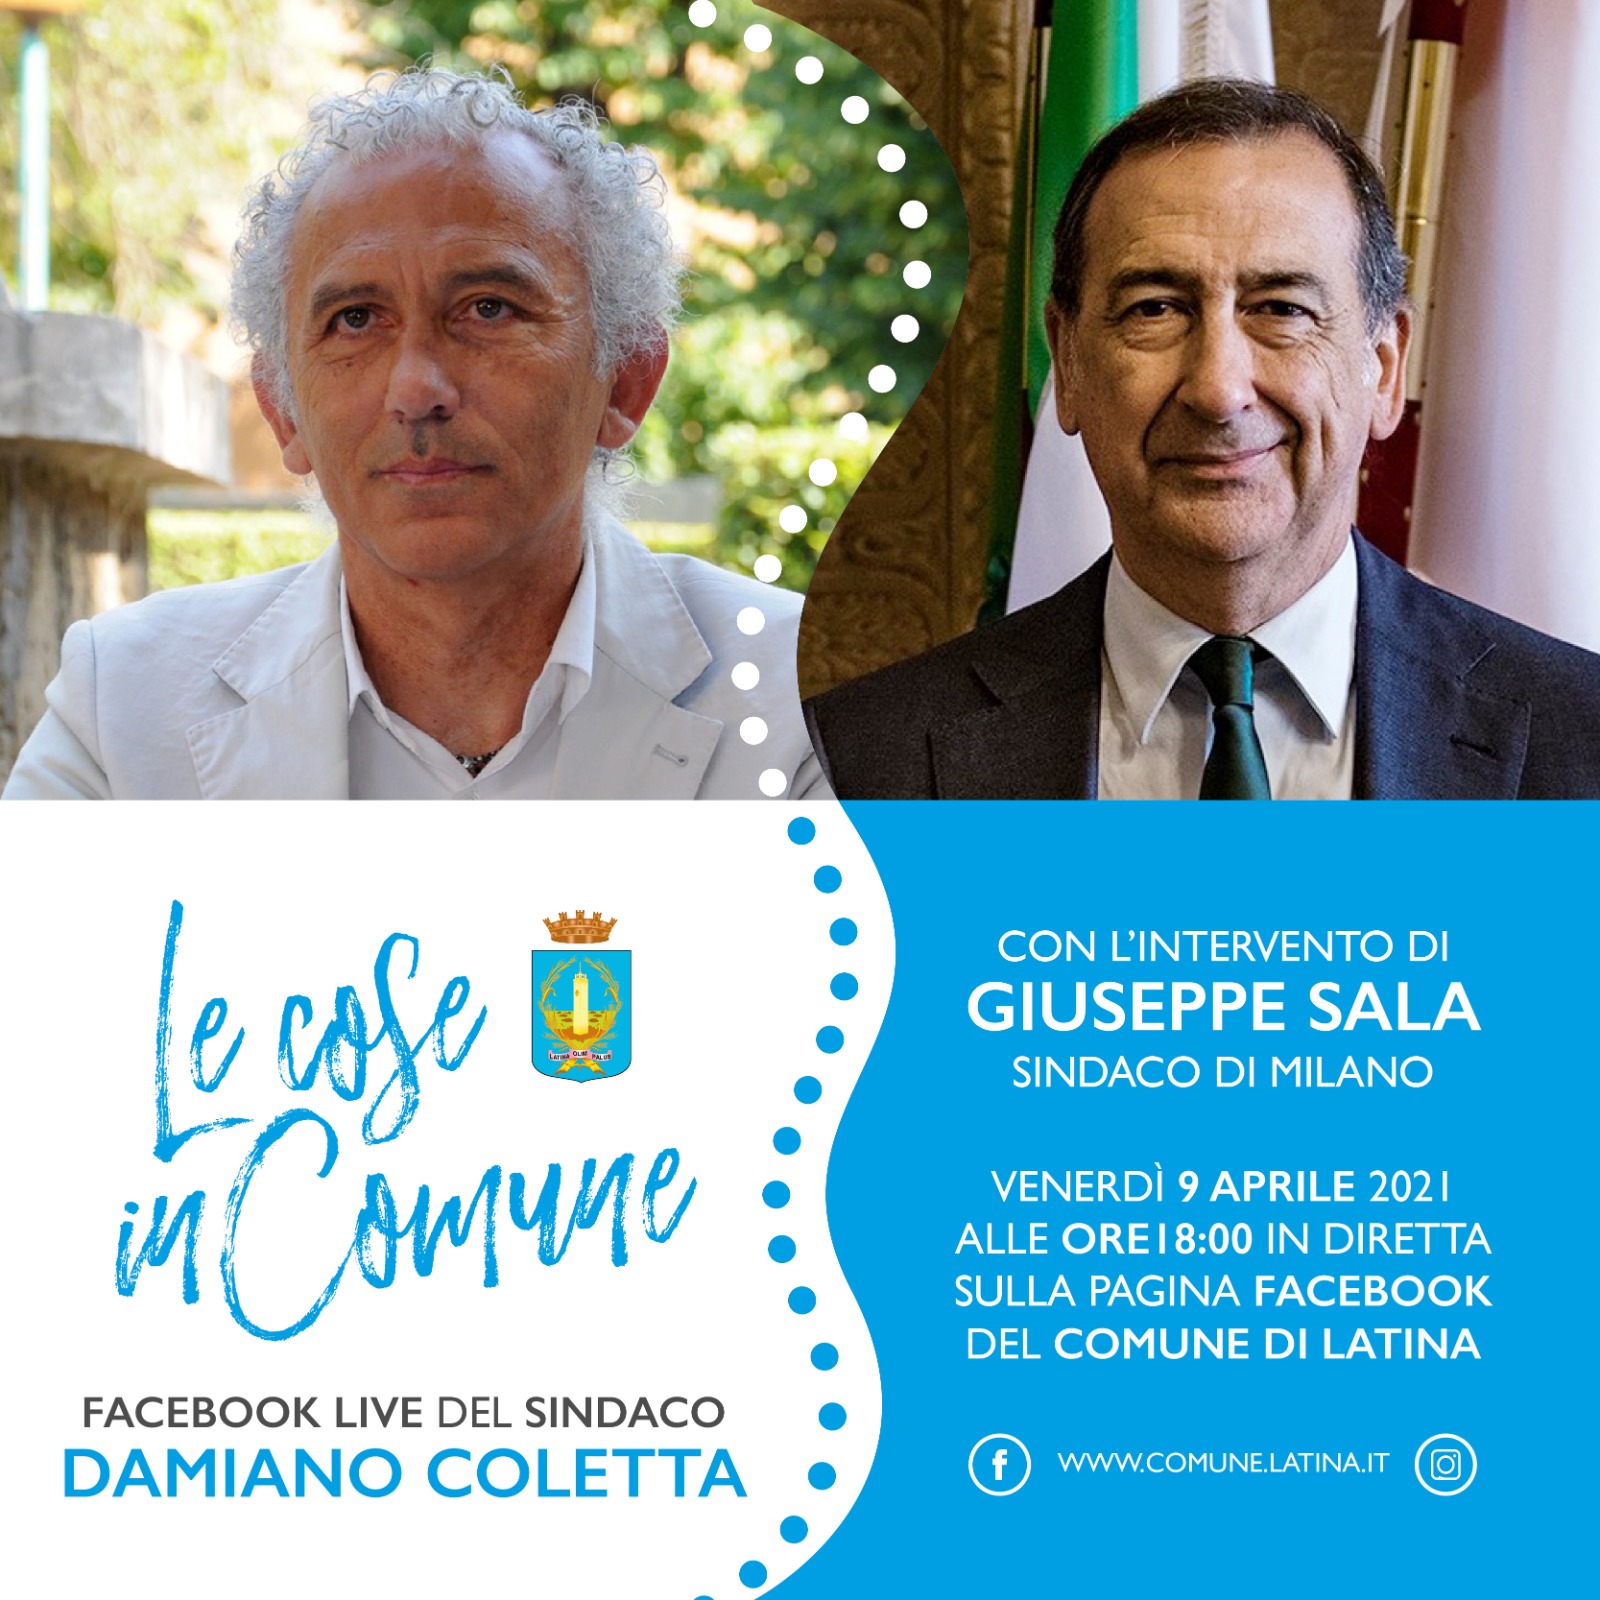 Damiano Coletta e Giuseppe Sala